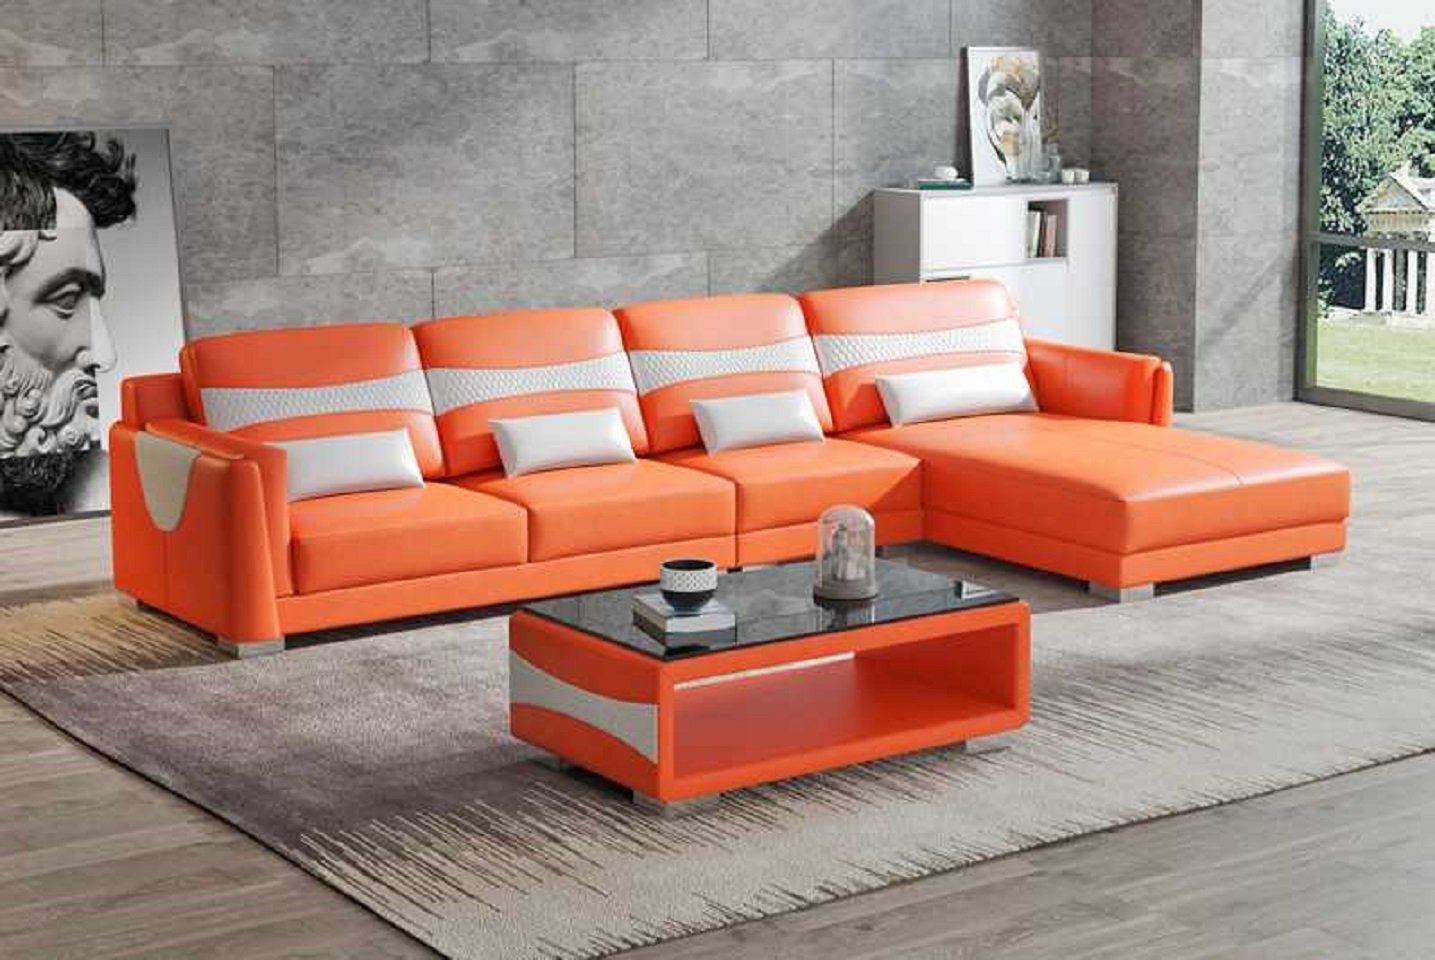 Form Eckgarnitur Orange/Weiß L Liege Sofa Neu, Teile, Europe Wohnzimmer Ecksofa in Luxus 3 JVmoebel Couch Ecksofa Made